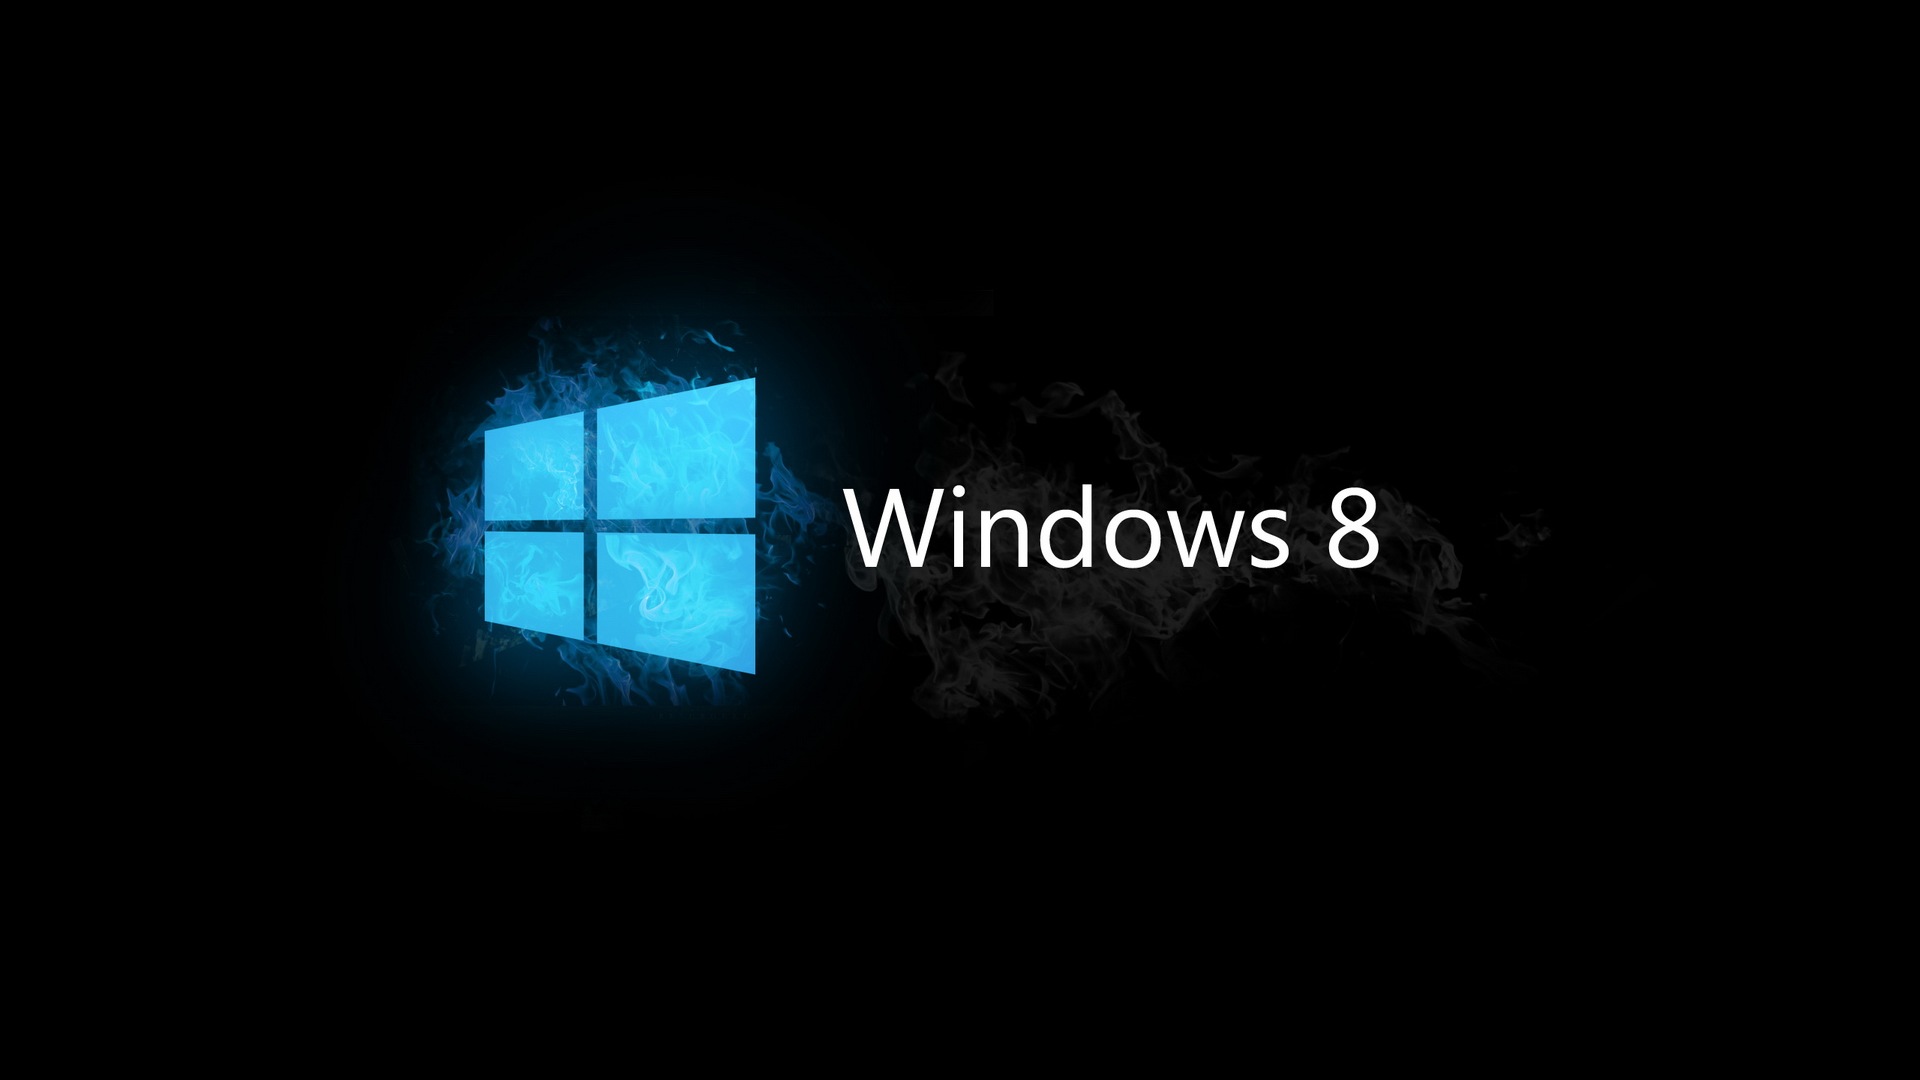 windows 8.1 fond d'écran hd,noir,ténèbres,bleu,blanc,texte